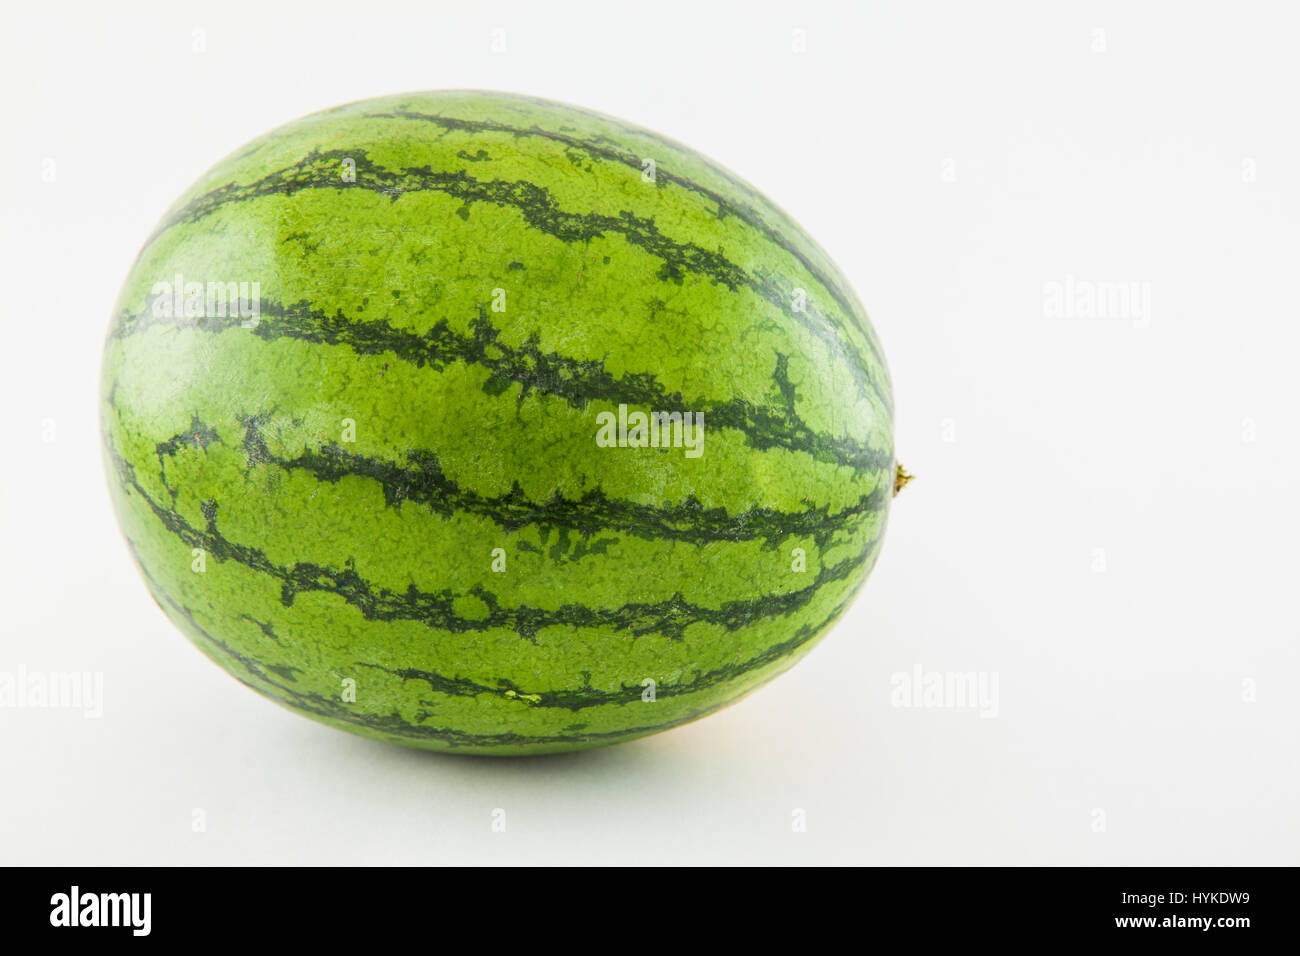 Watermelon (Citrullus lanatus) on white background Stock Photo